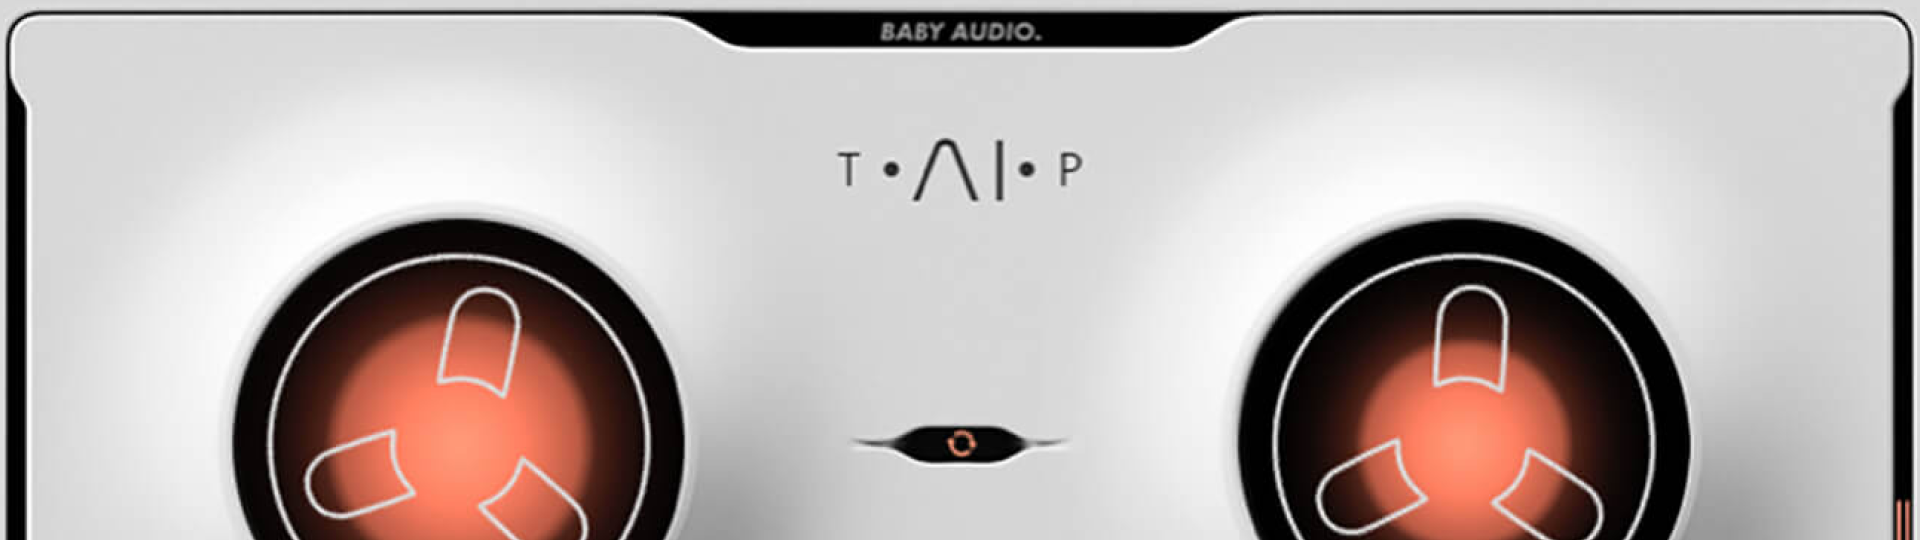 BABY Audio TAIP